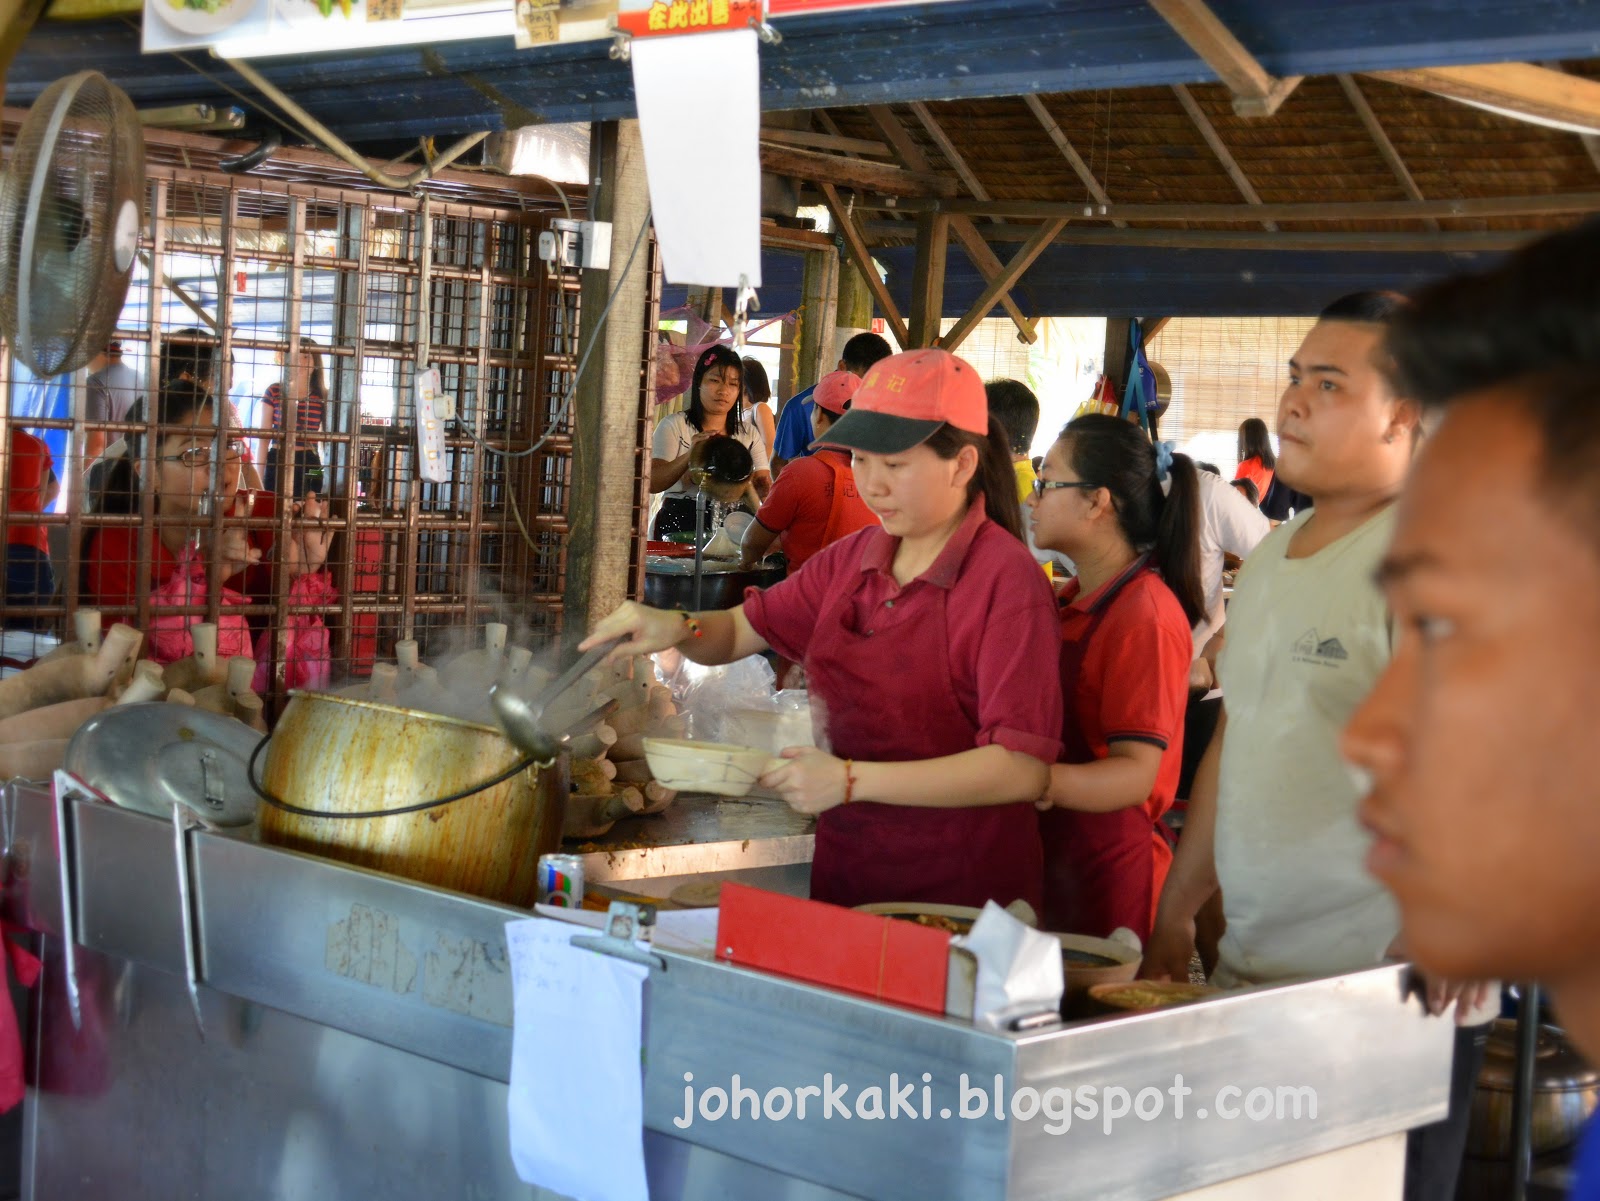 Kiang Kee Bak Kut Teh Kota Tinggi 强记肉骨茶 Johor |Johor Kaki ...